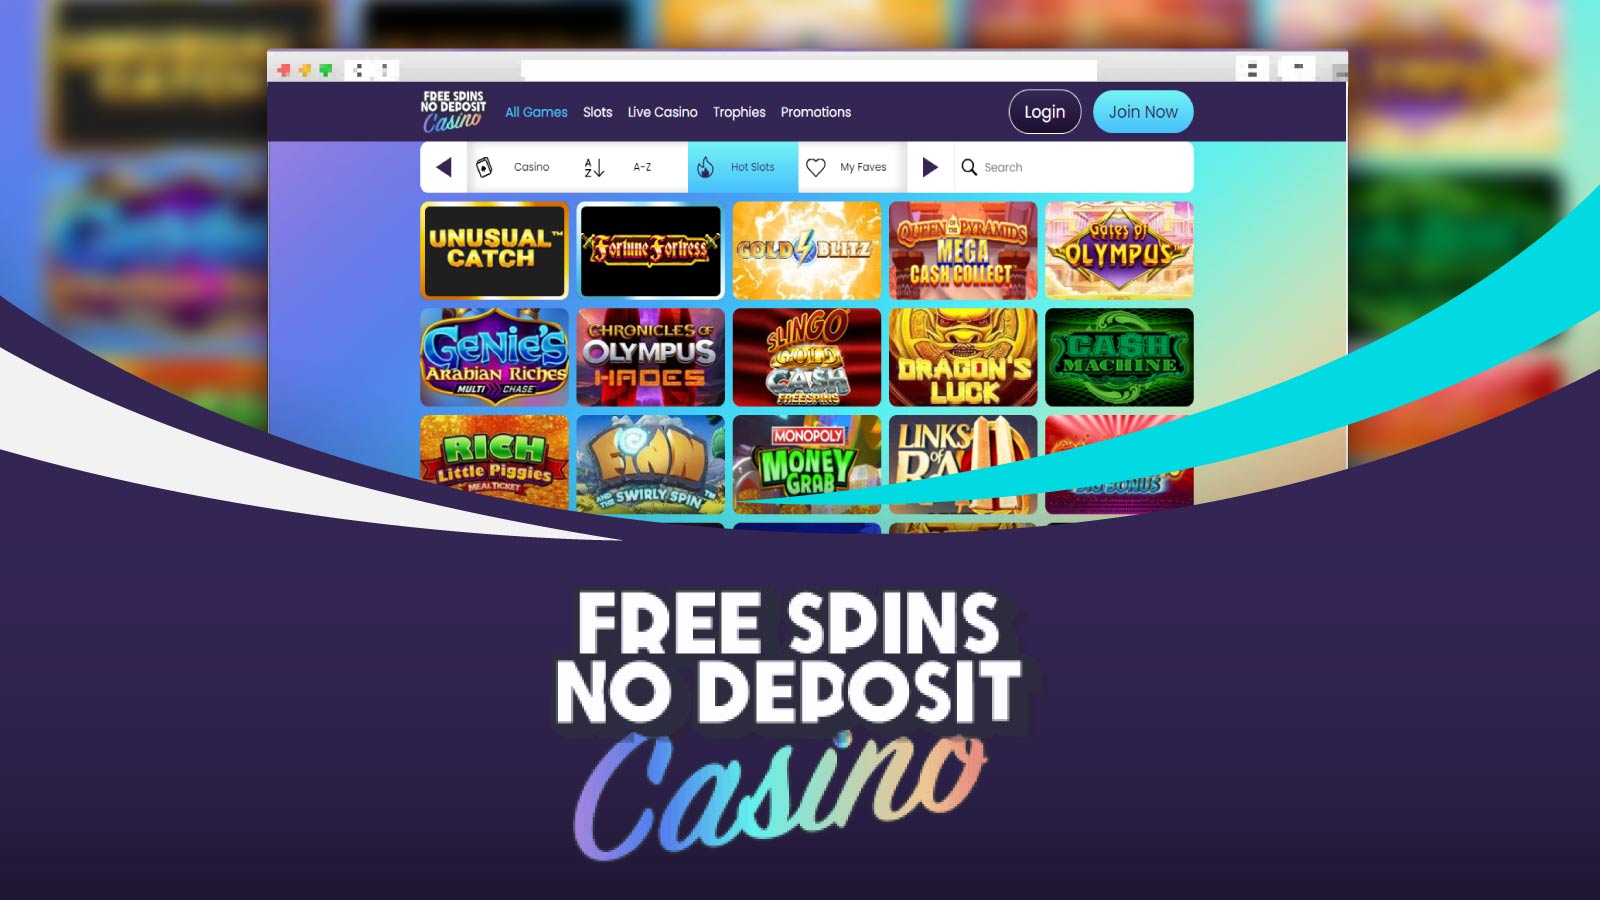 FSND Casino Better for Existing Player Bonuses